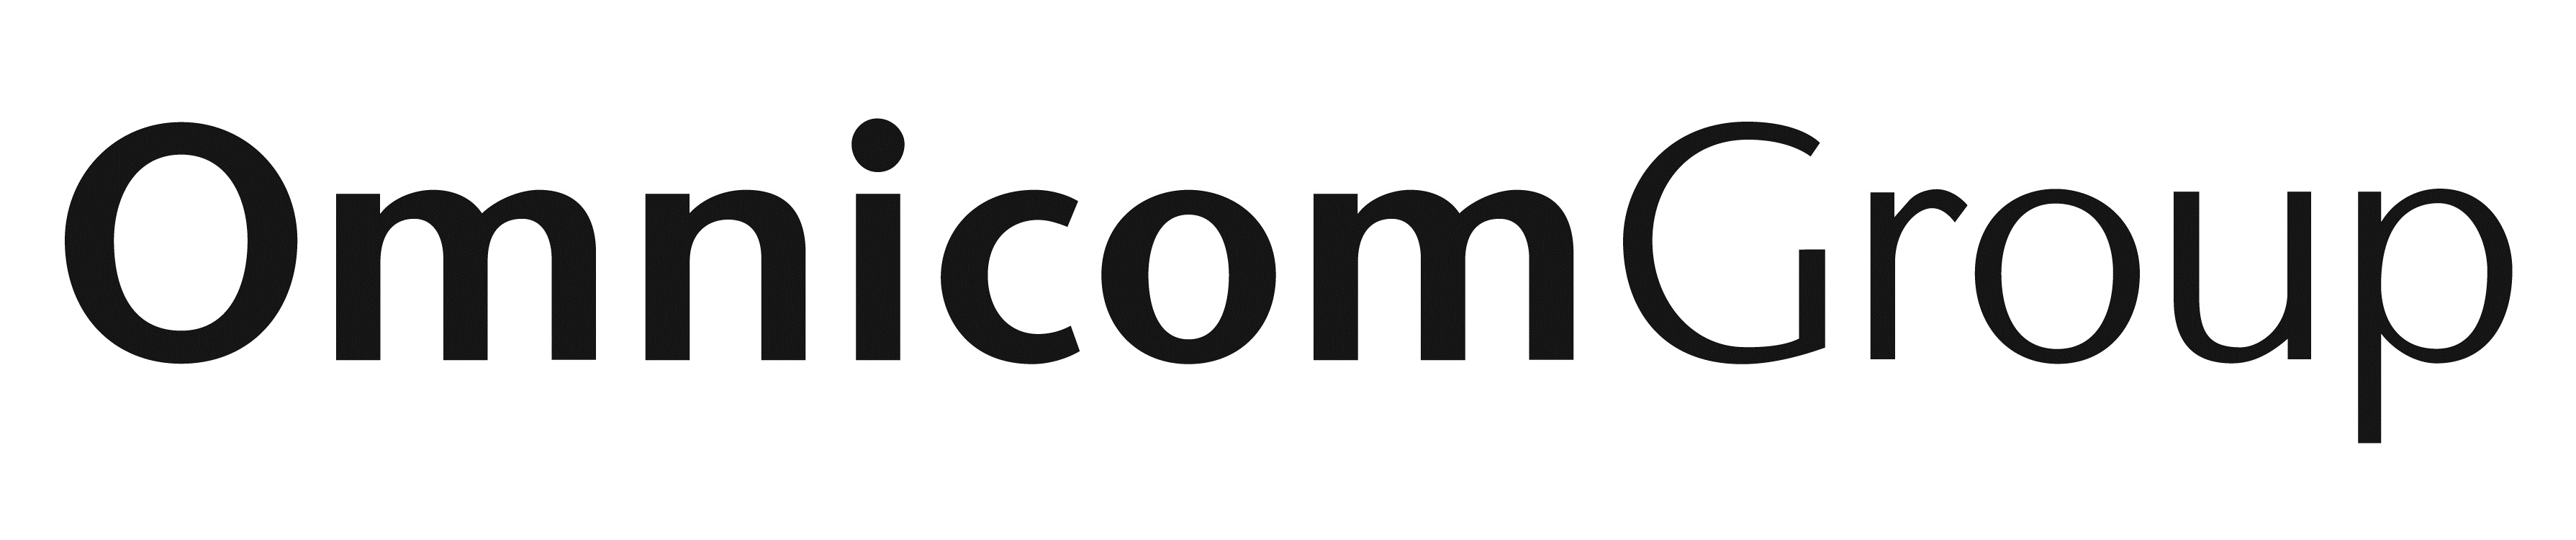 Omnicom Group Logo ENGAGE Omn